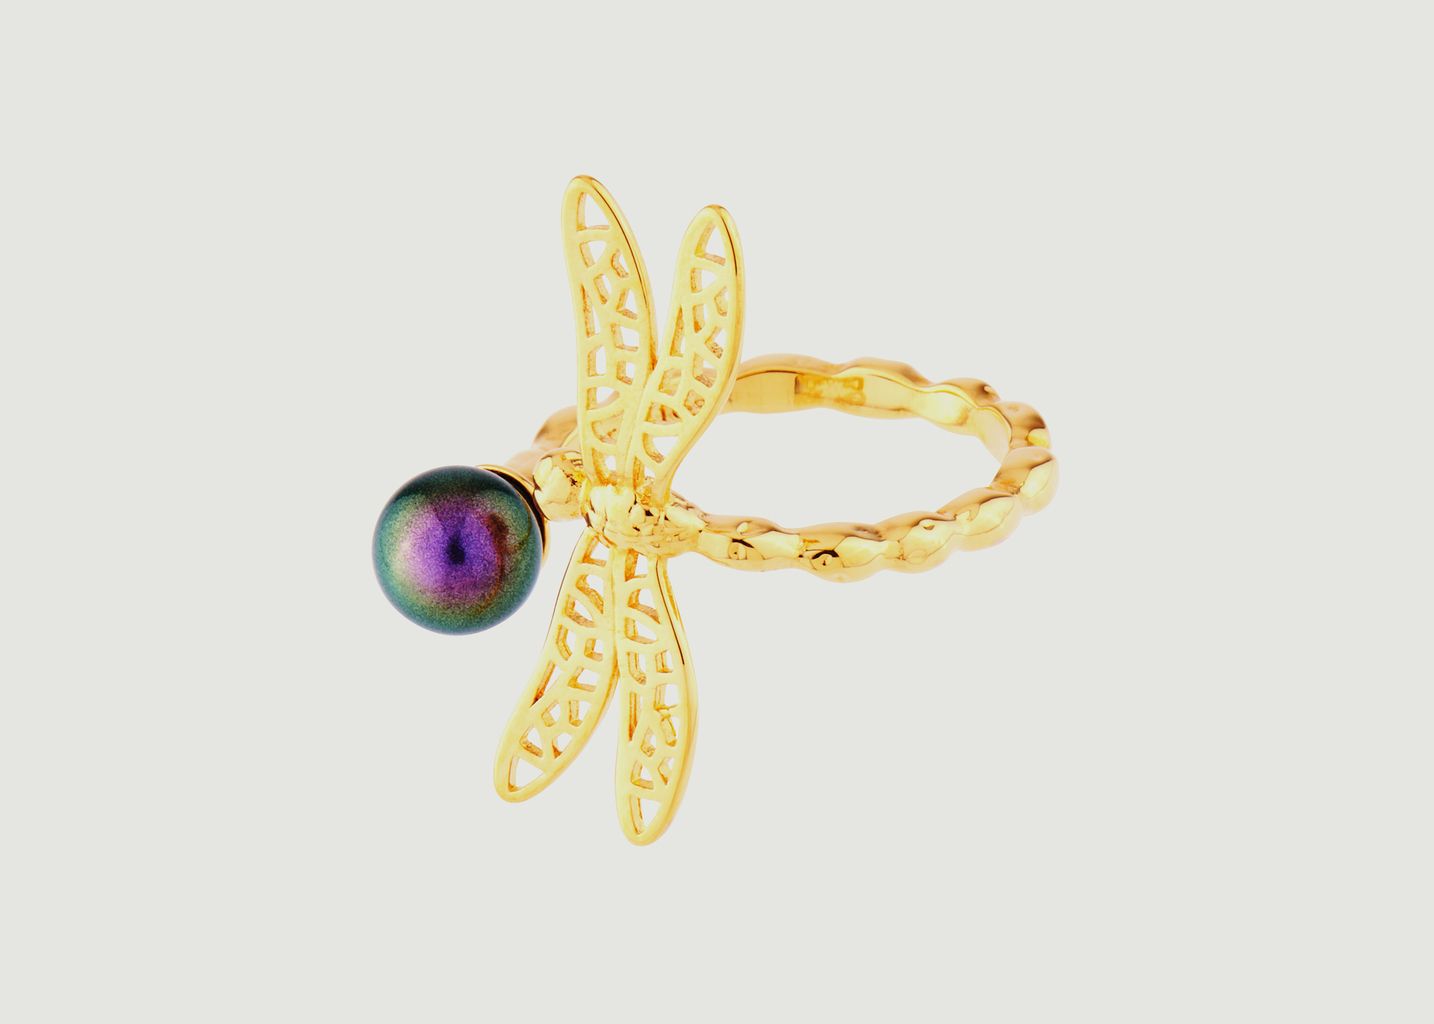 Bague ajustable petite libellule et perle iridescente - Les Néréides